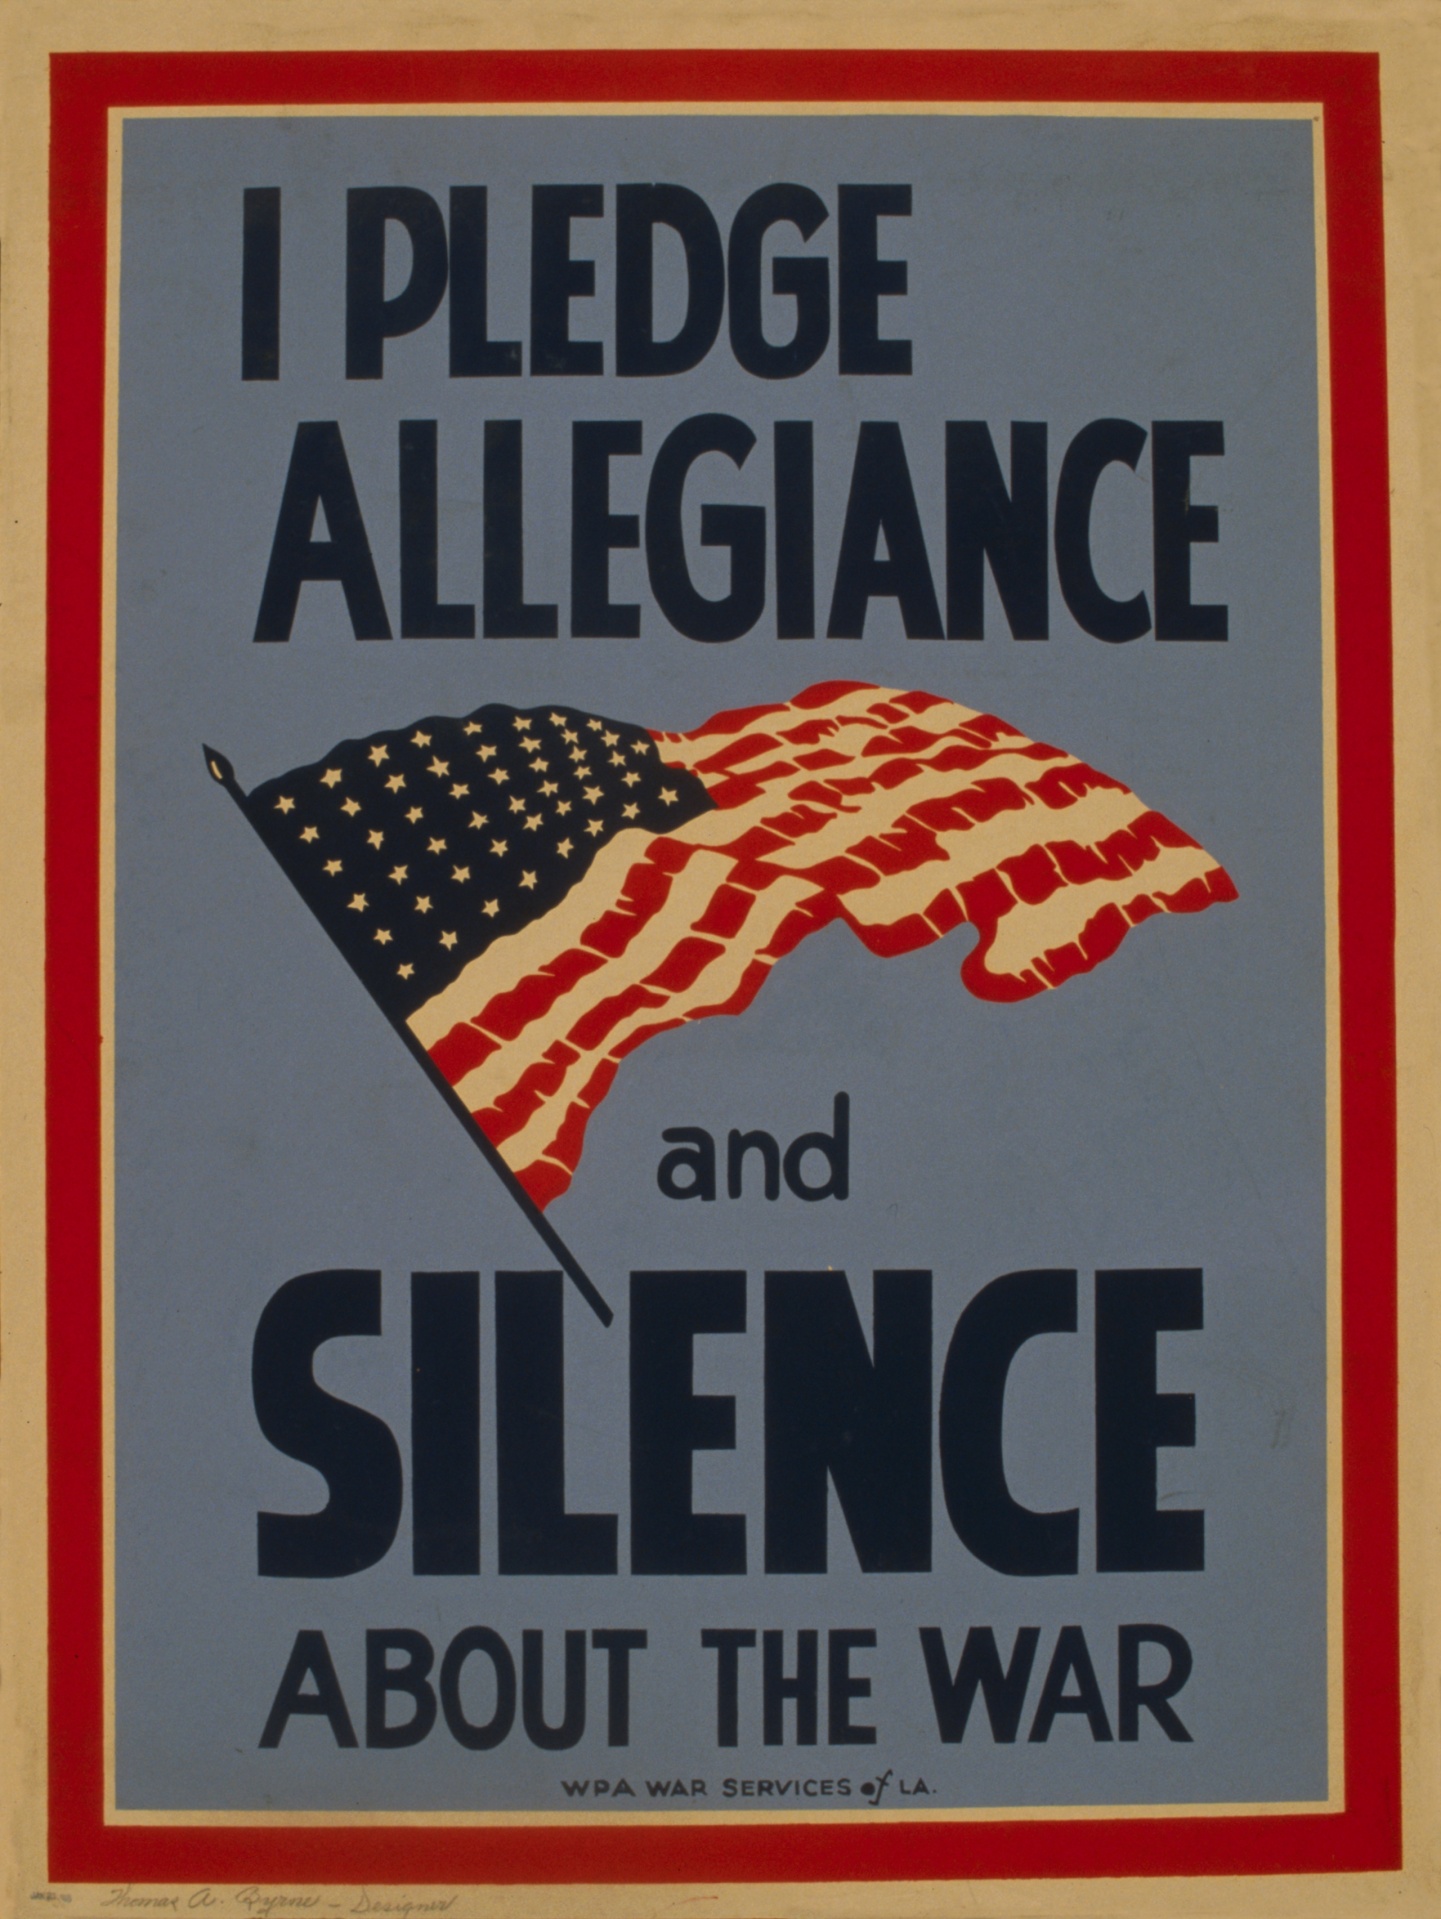 Cartaz da guerra do silêncio Vintage